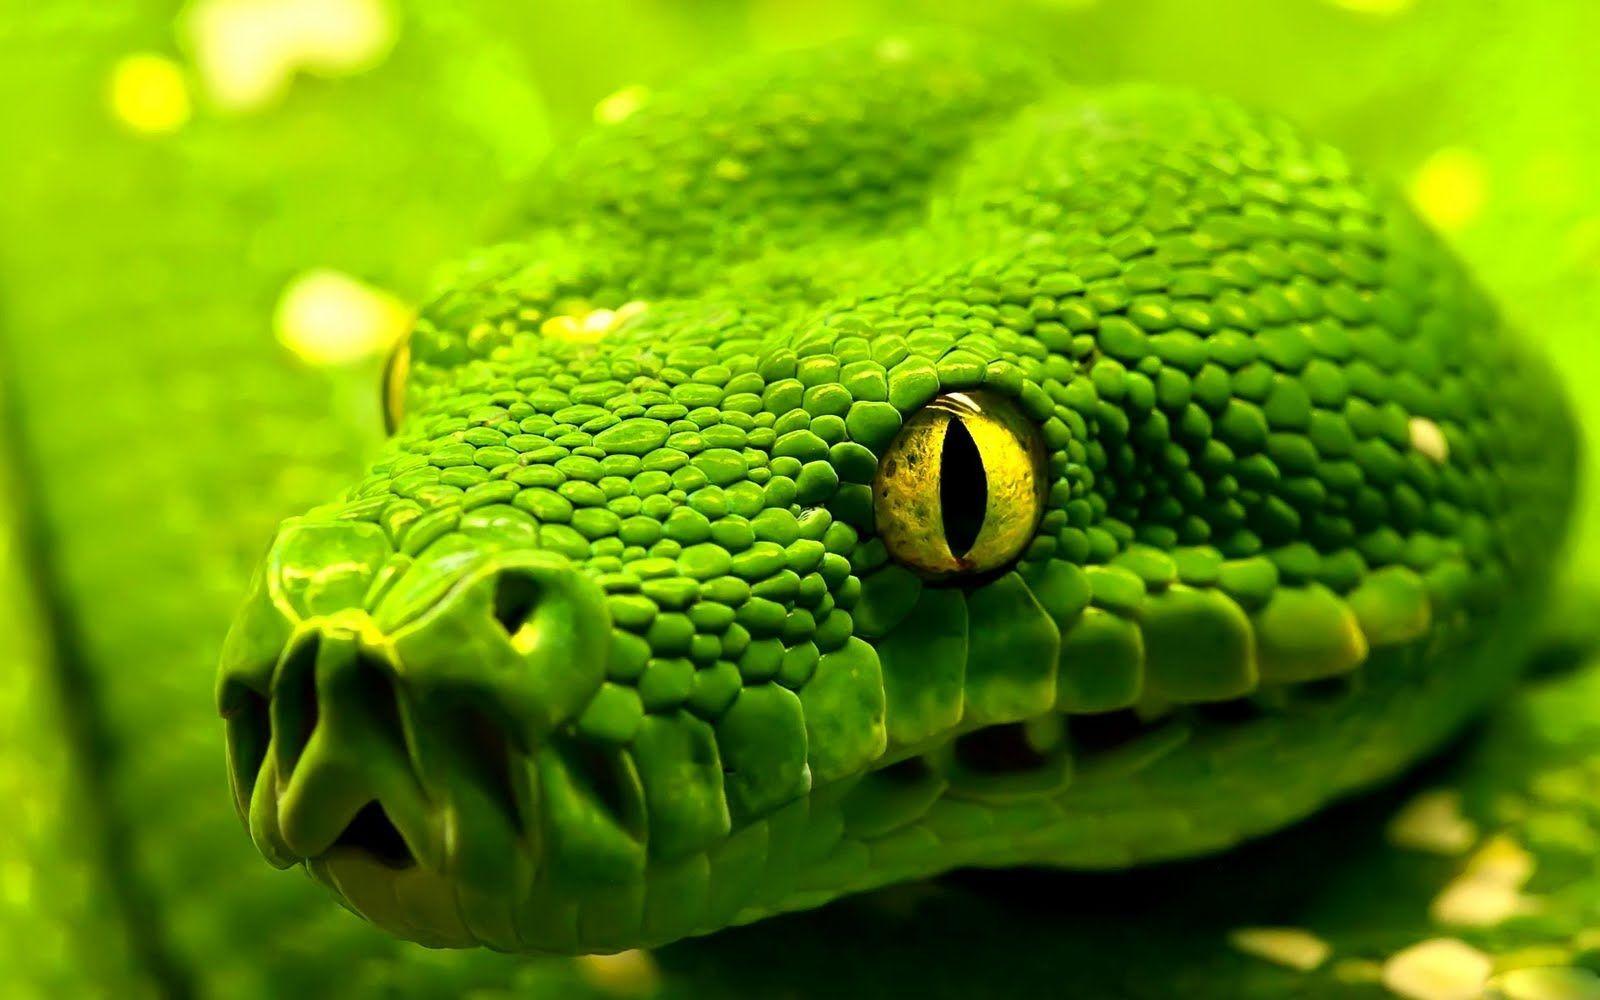 Green Snake Wallpapers - Top Những Hình Ảnh Đẹp